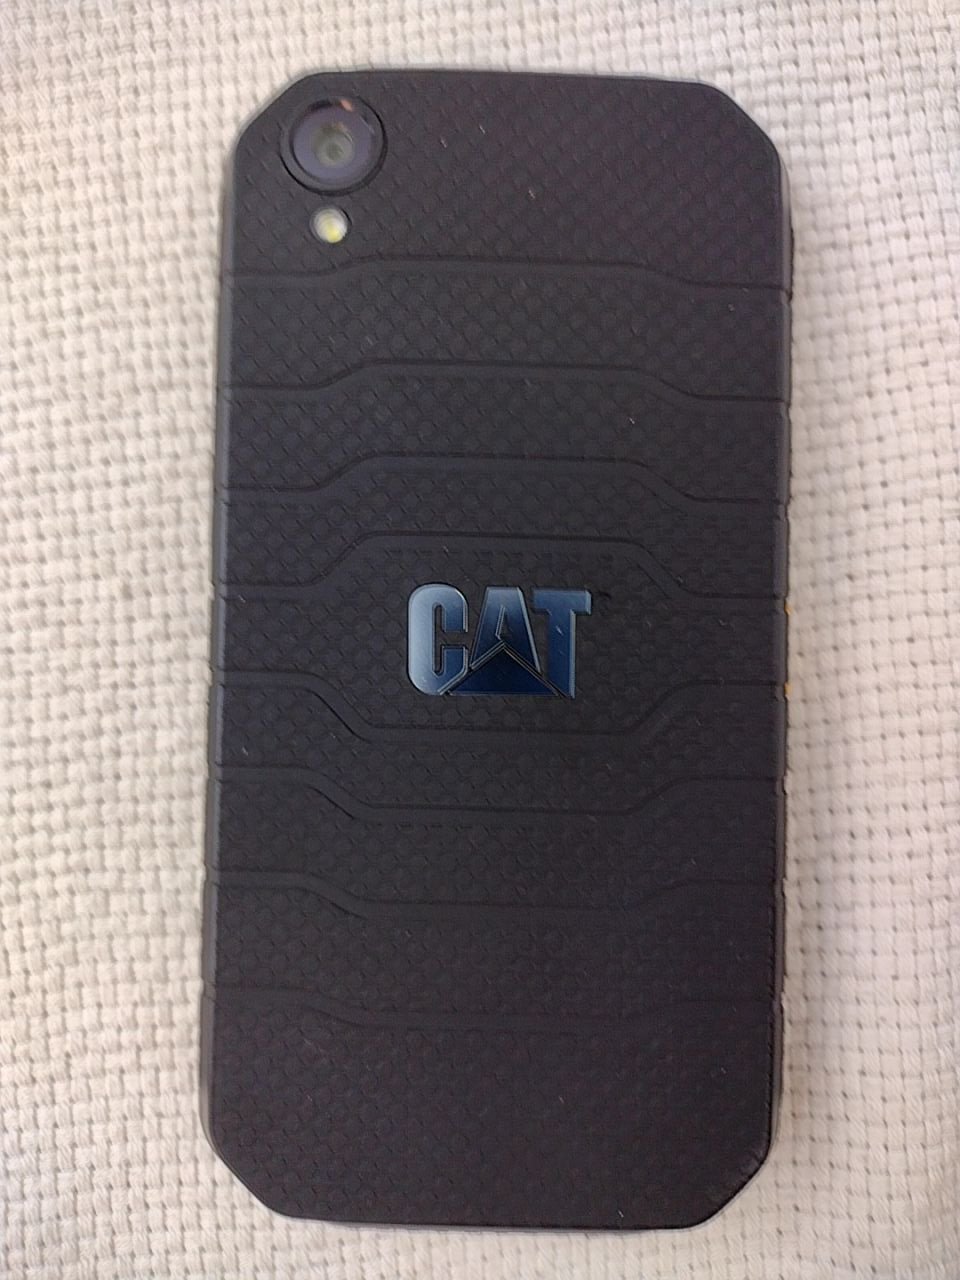 Smartphone CAT S41